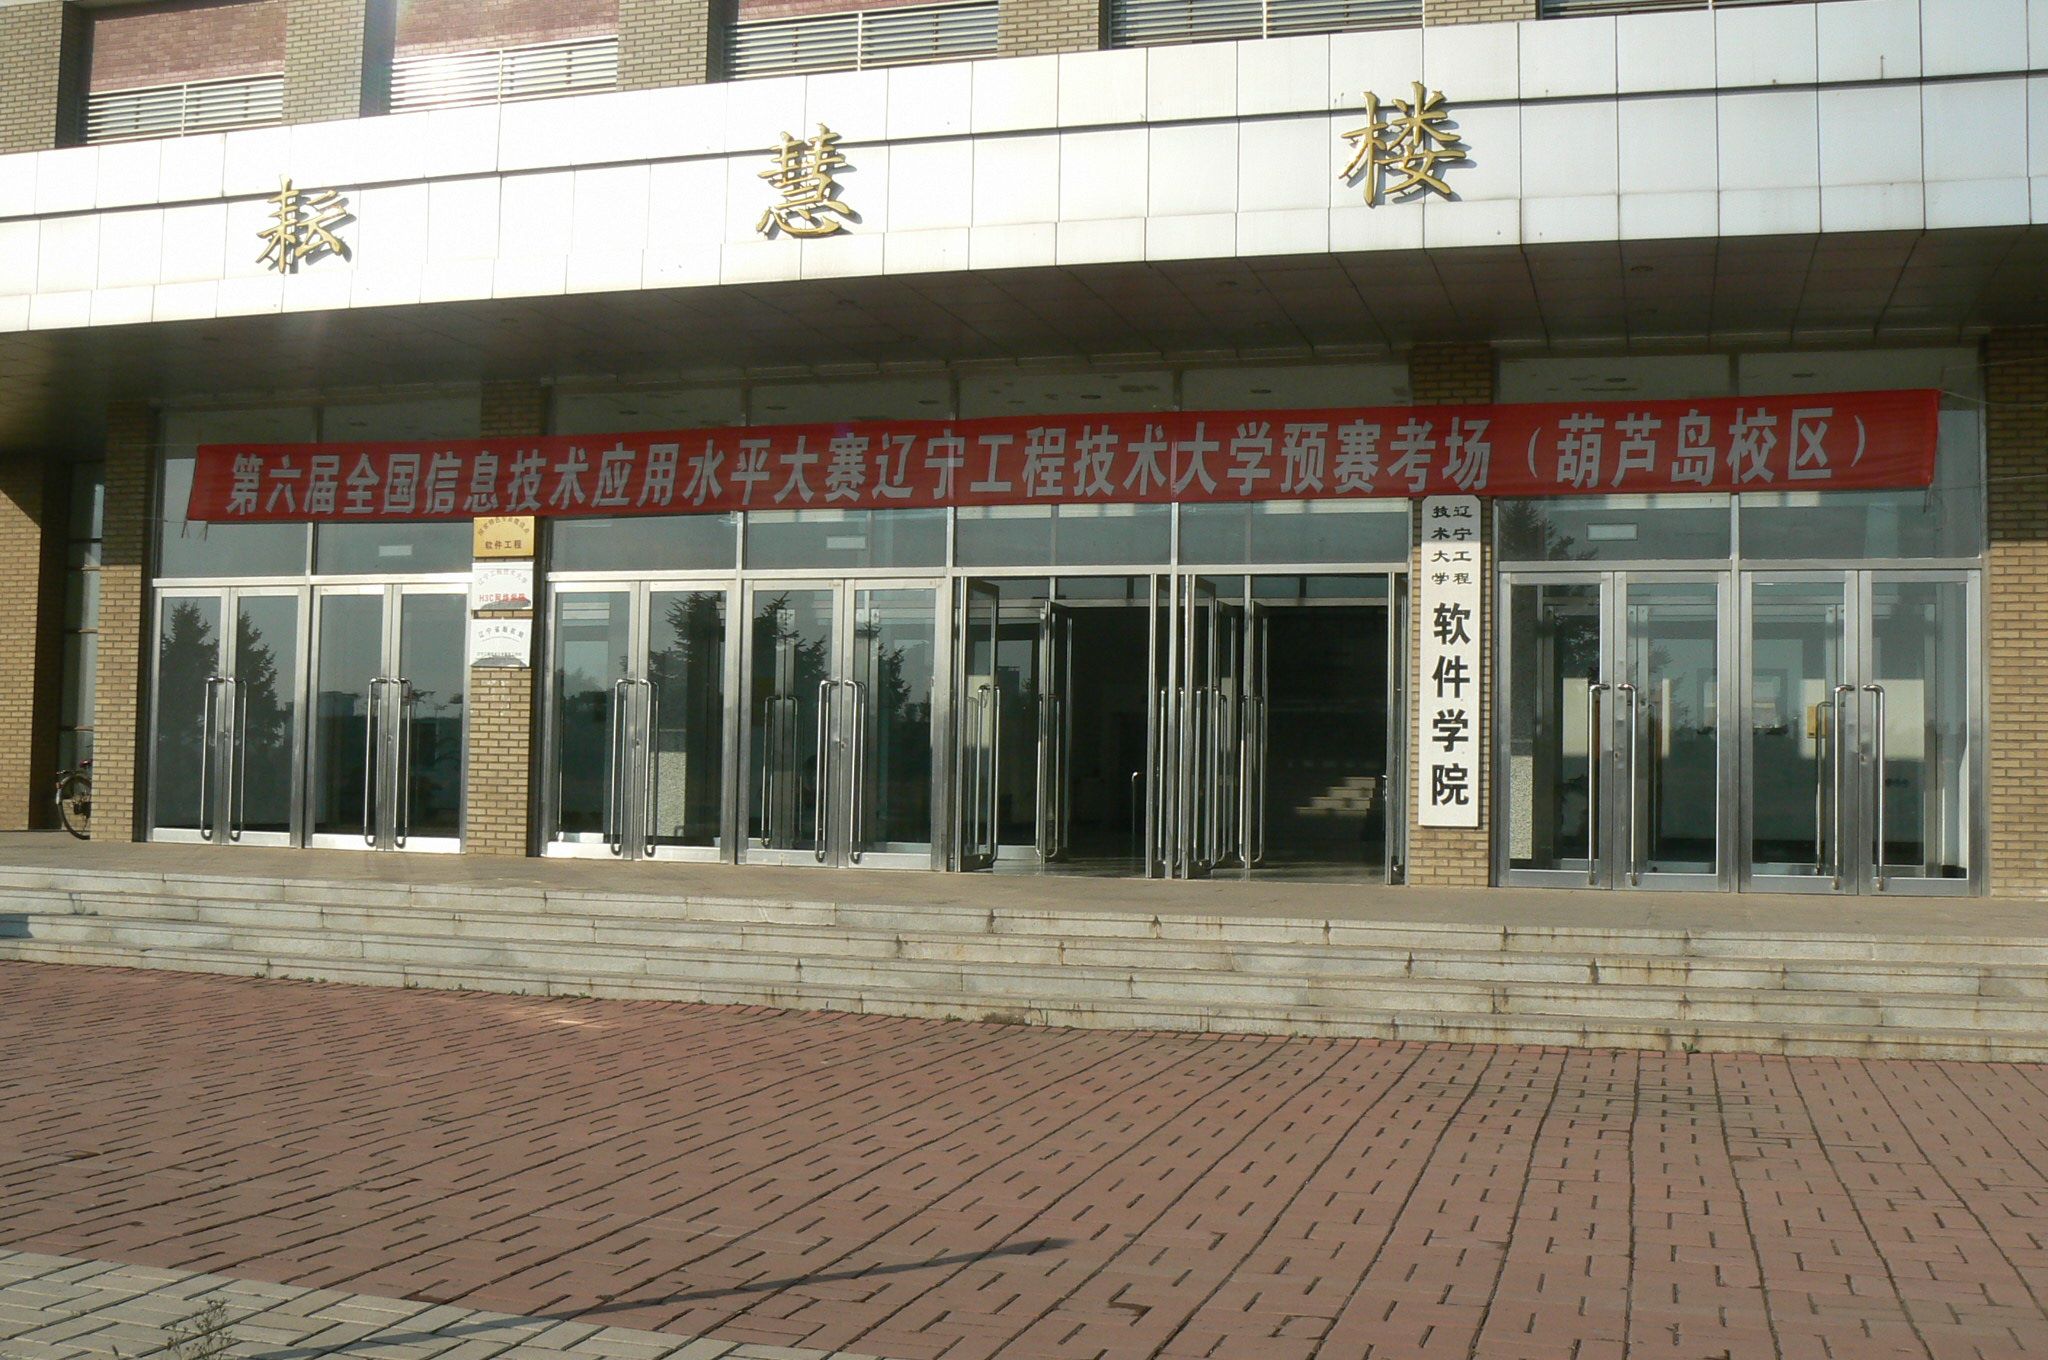 葫芦岛校区龙湾校园平面示意图-辽宁工程技术大学